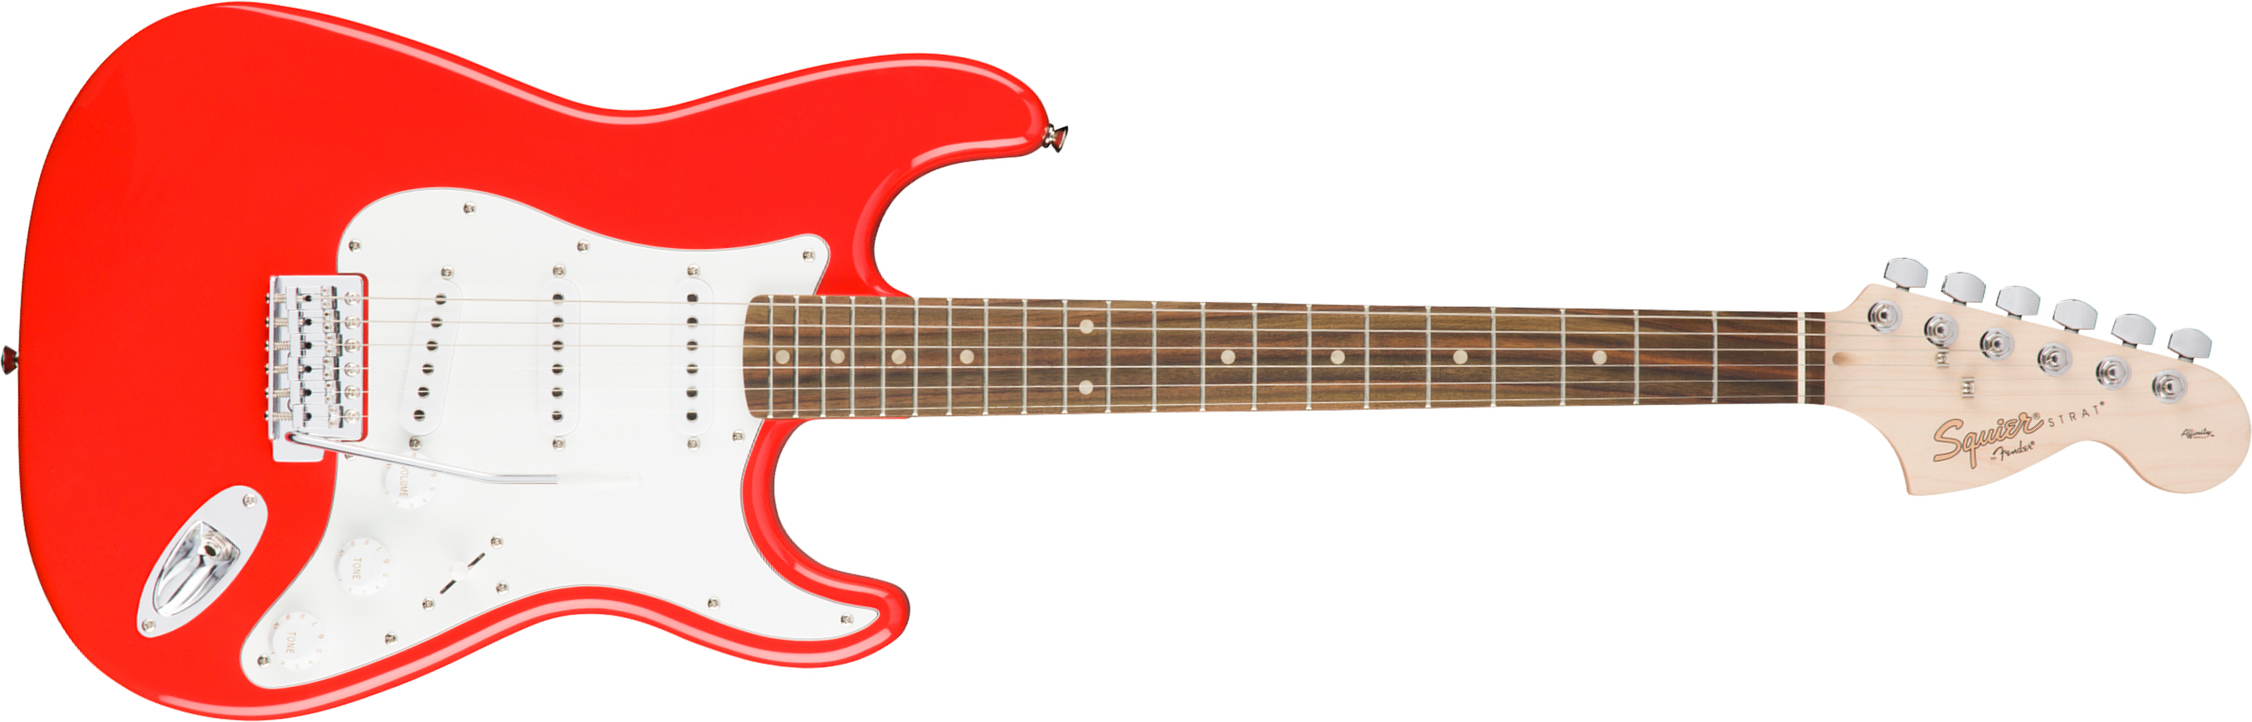 Squier Strat Affinity Sss Trem Lau - Race Red - Guitarra eléctrica con forma de str. - Main picture